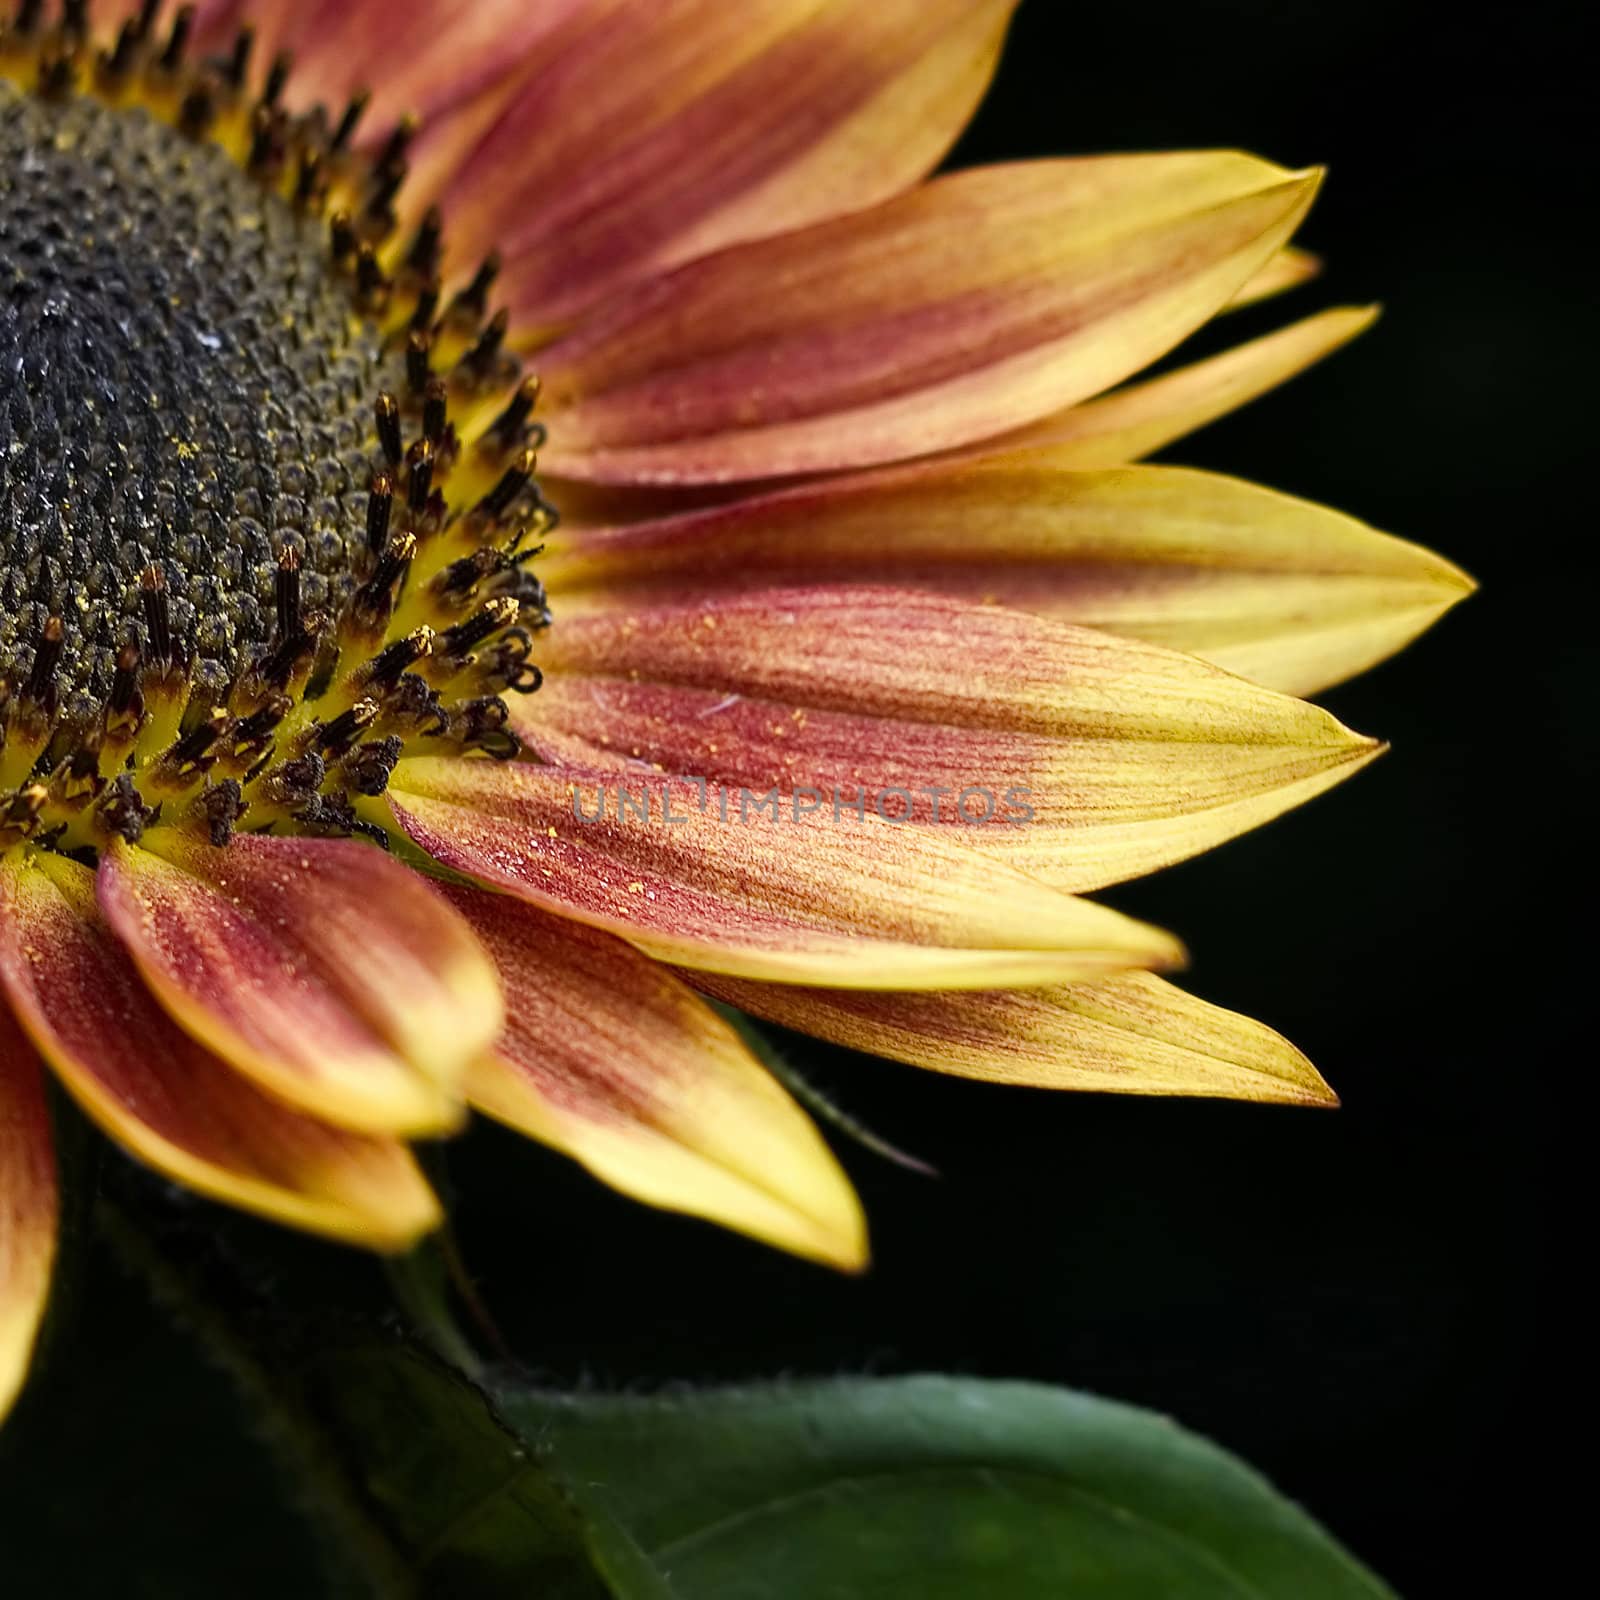 sunflower by miradrozdowski